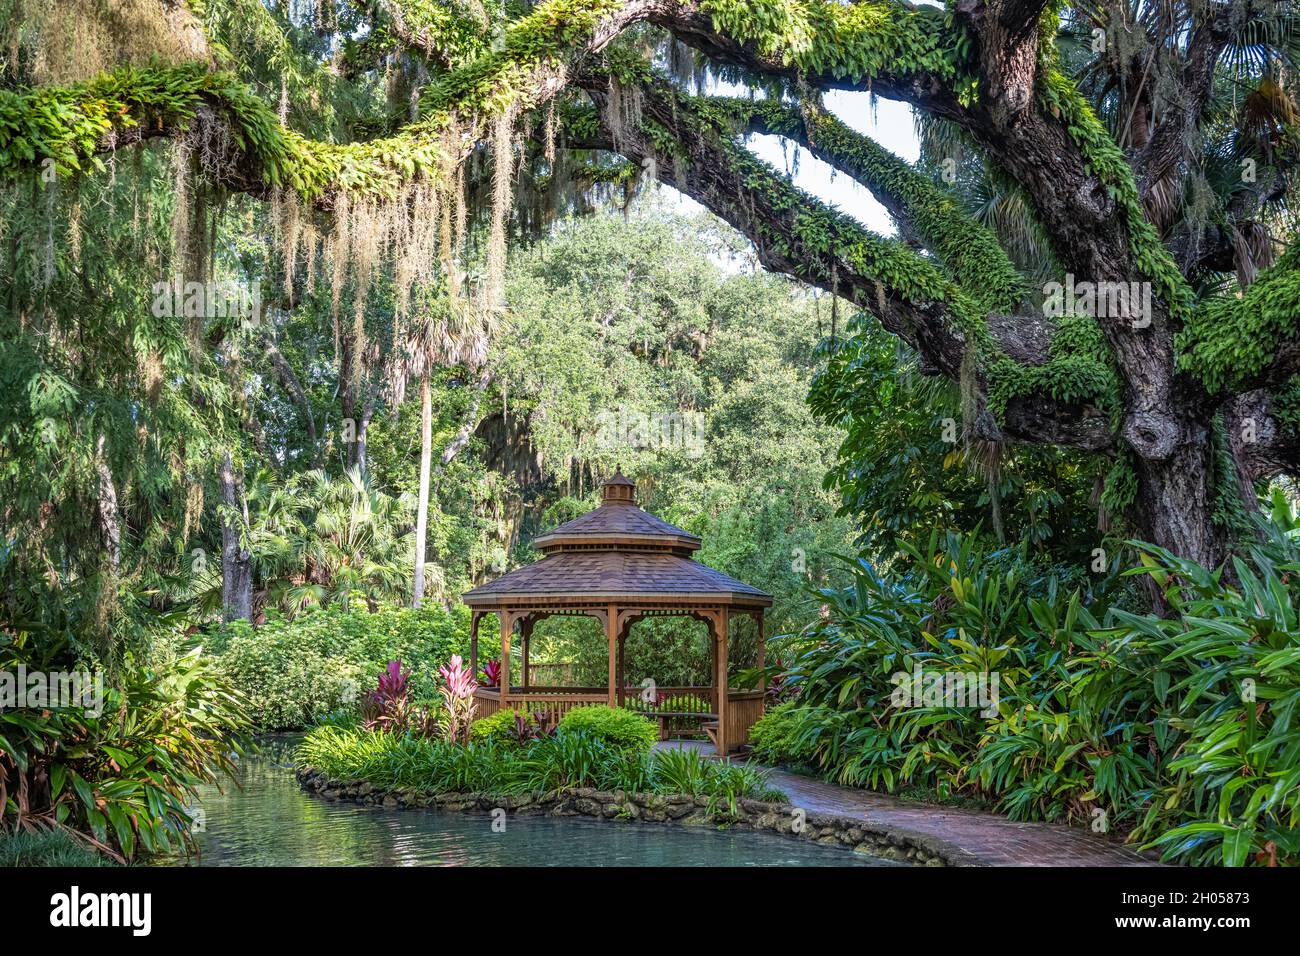 Belvédère en bois au bord de l'eau dans les jardins formels du parc national Washington Oaks Gardens à Palm Coast, Floride.(ÉTATS-UNIS) Banque D'Images